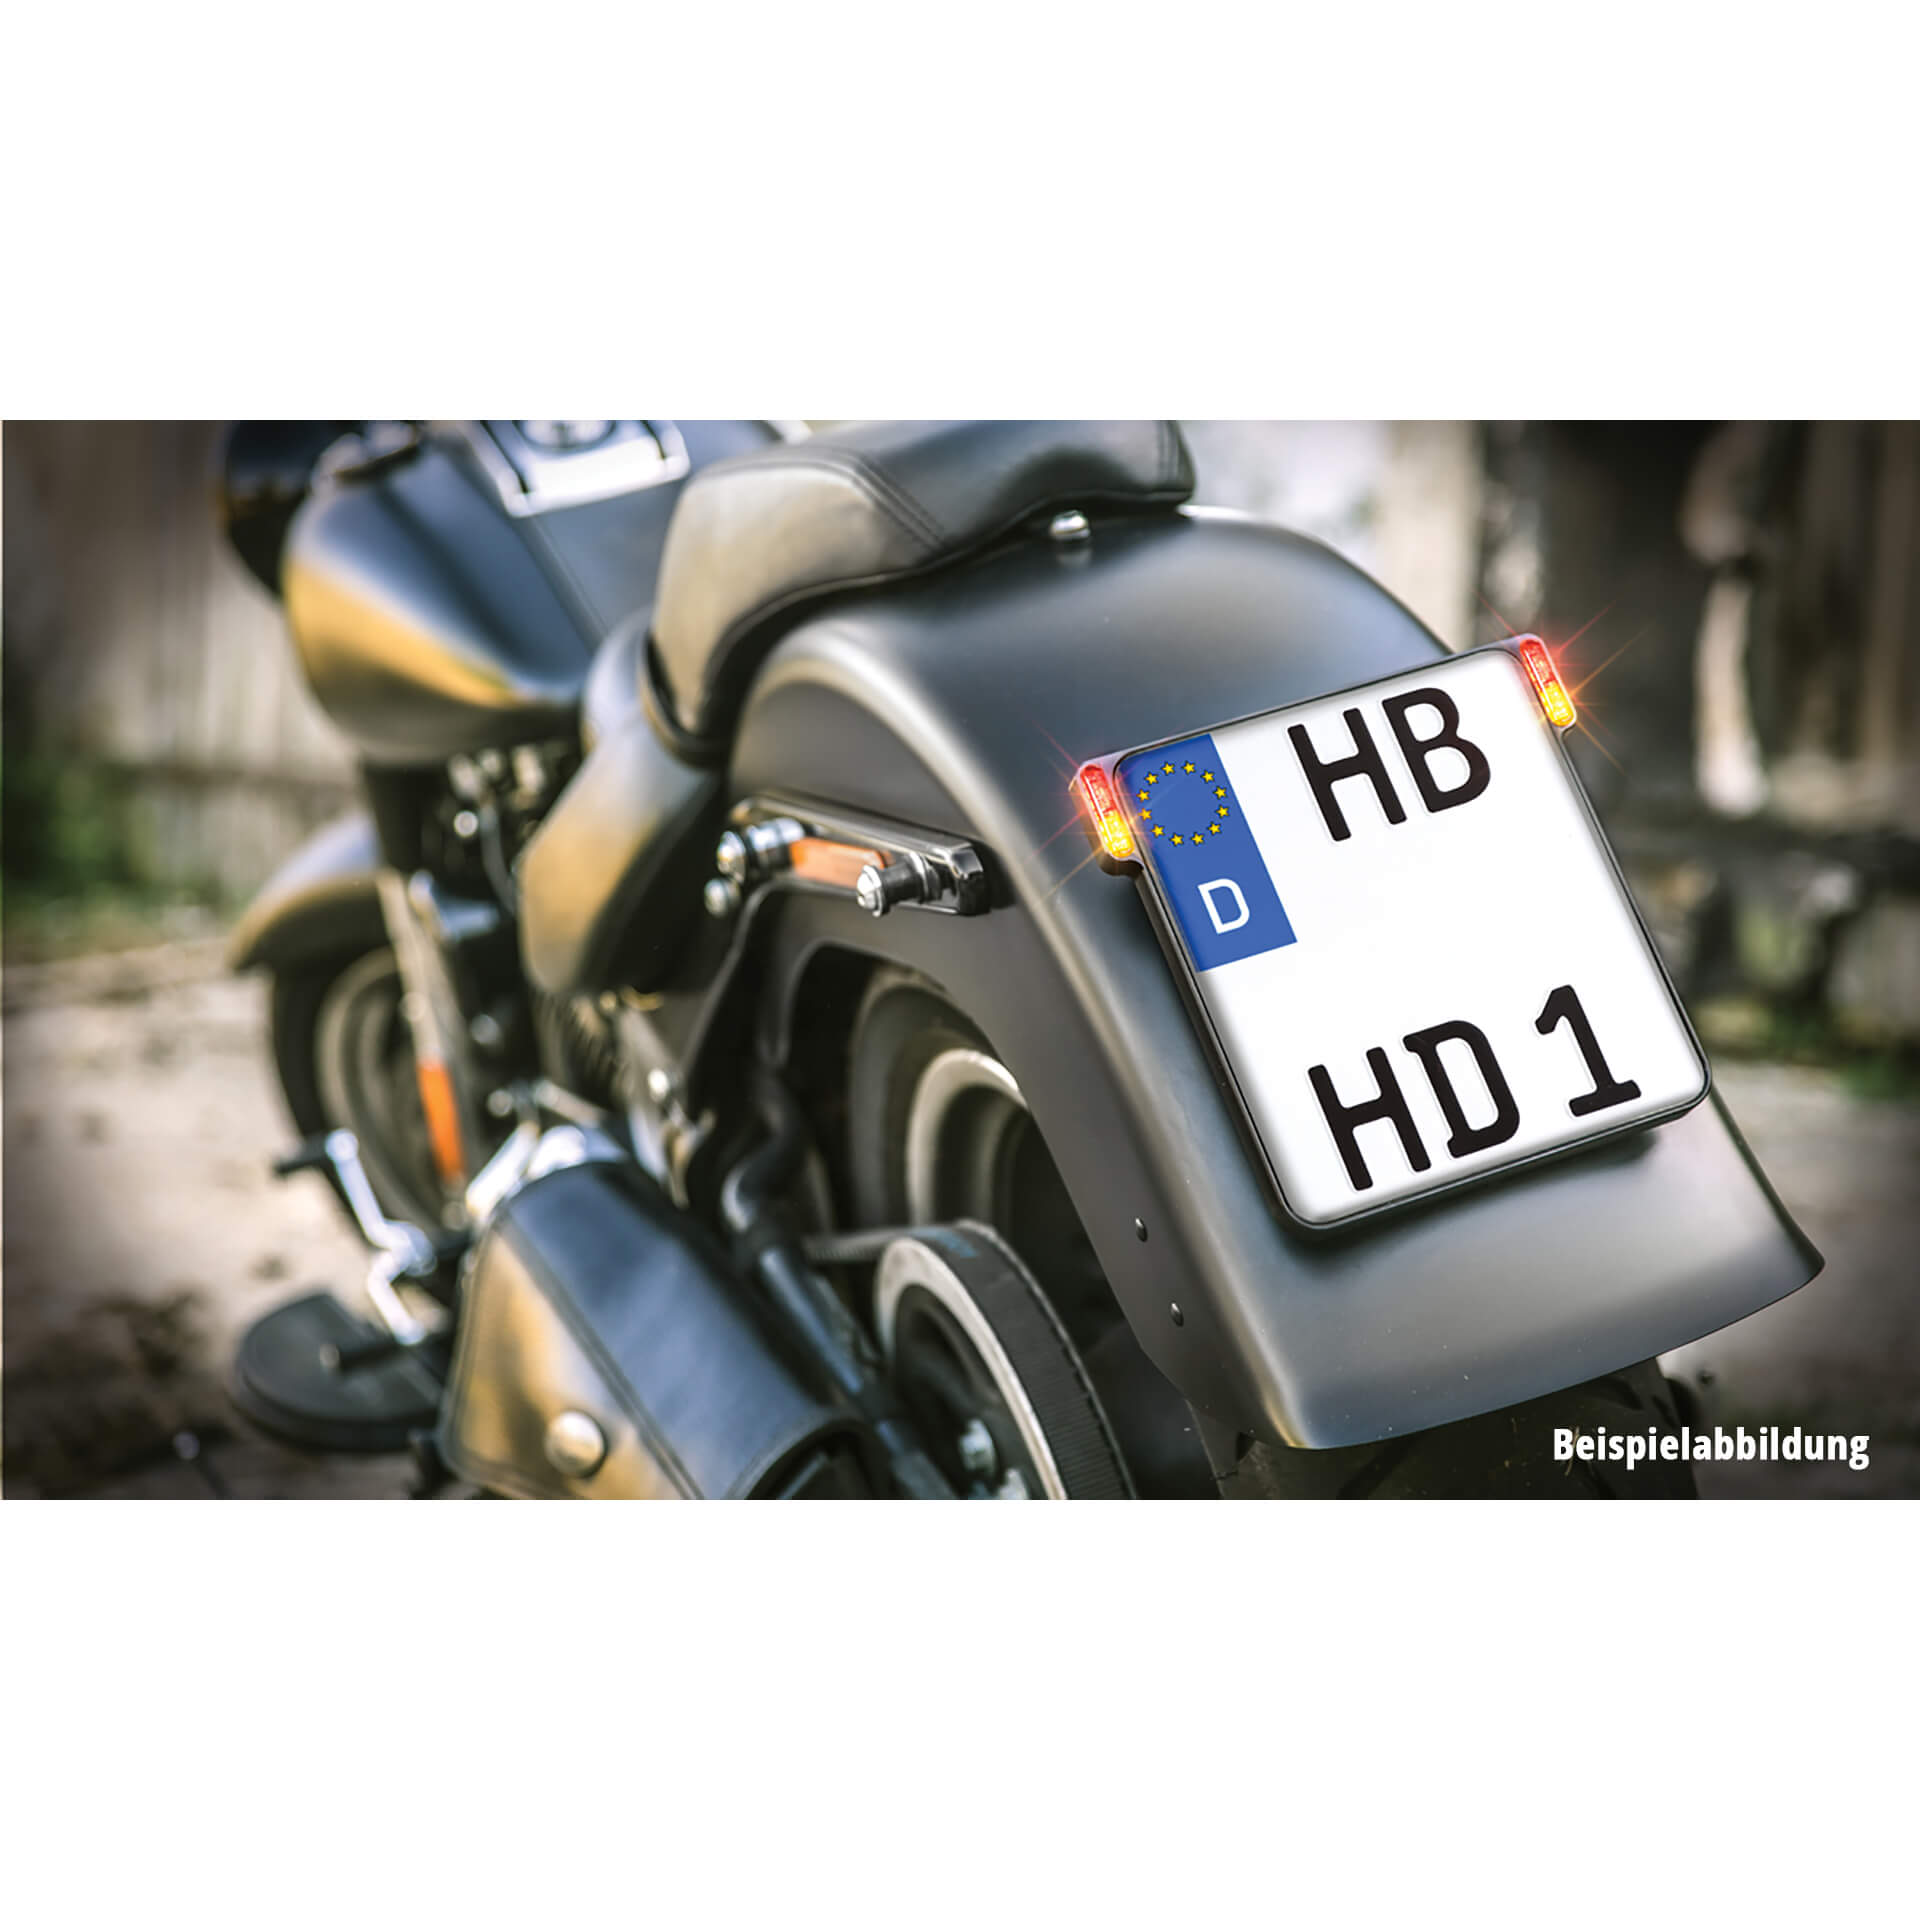 Motorrad-Kennzeichenbeleuchtung -  - Motorrad Online Shop